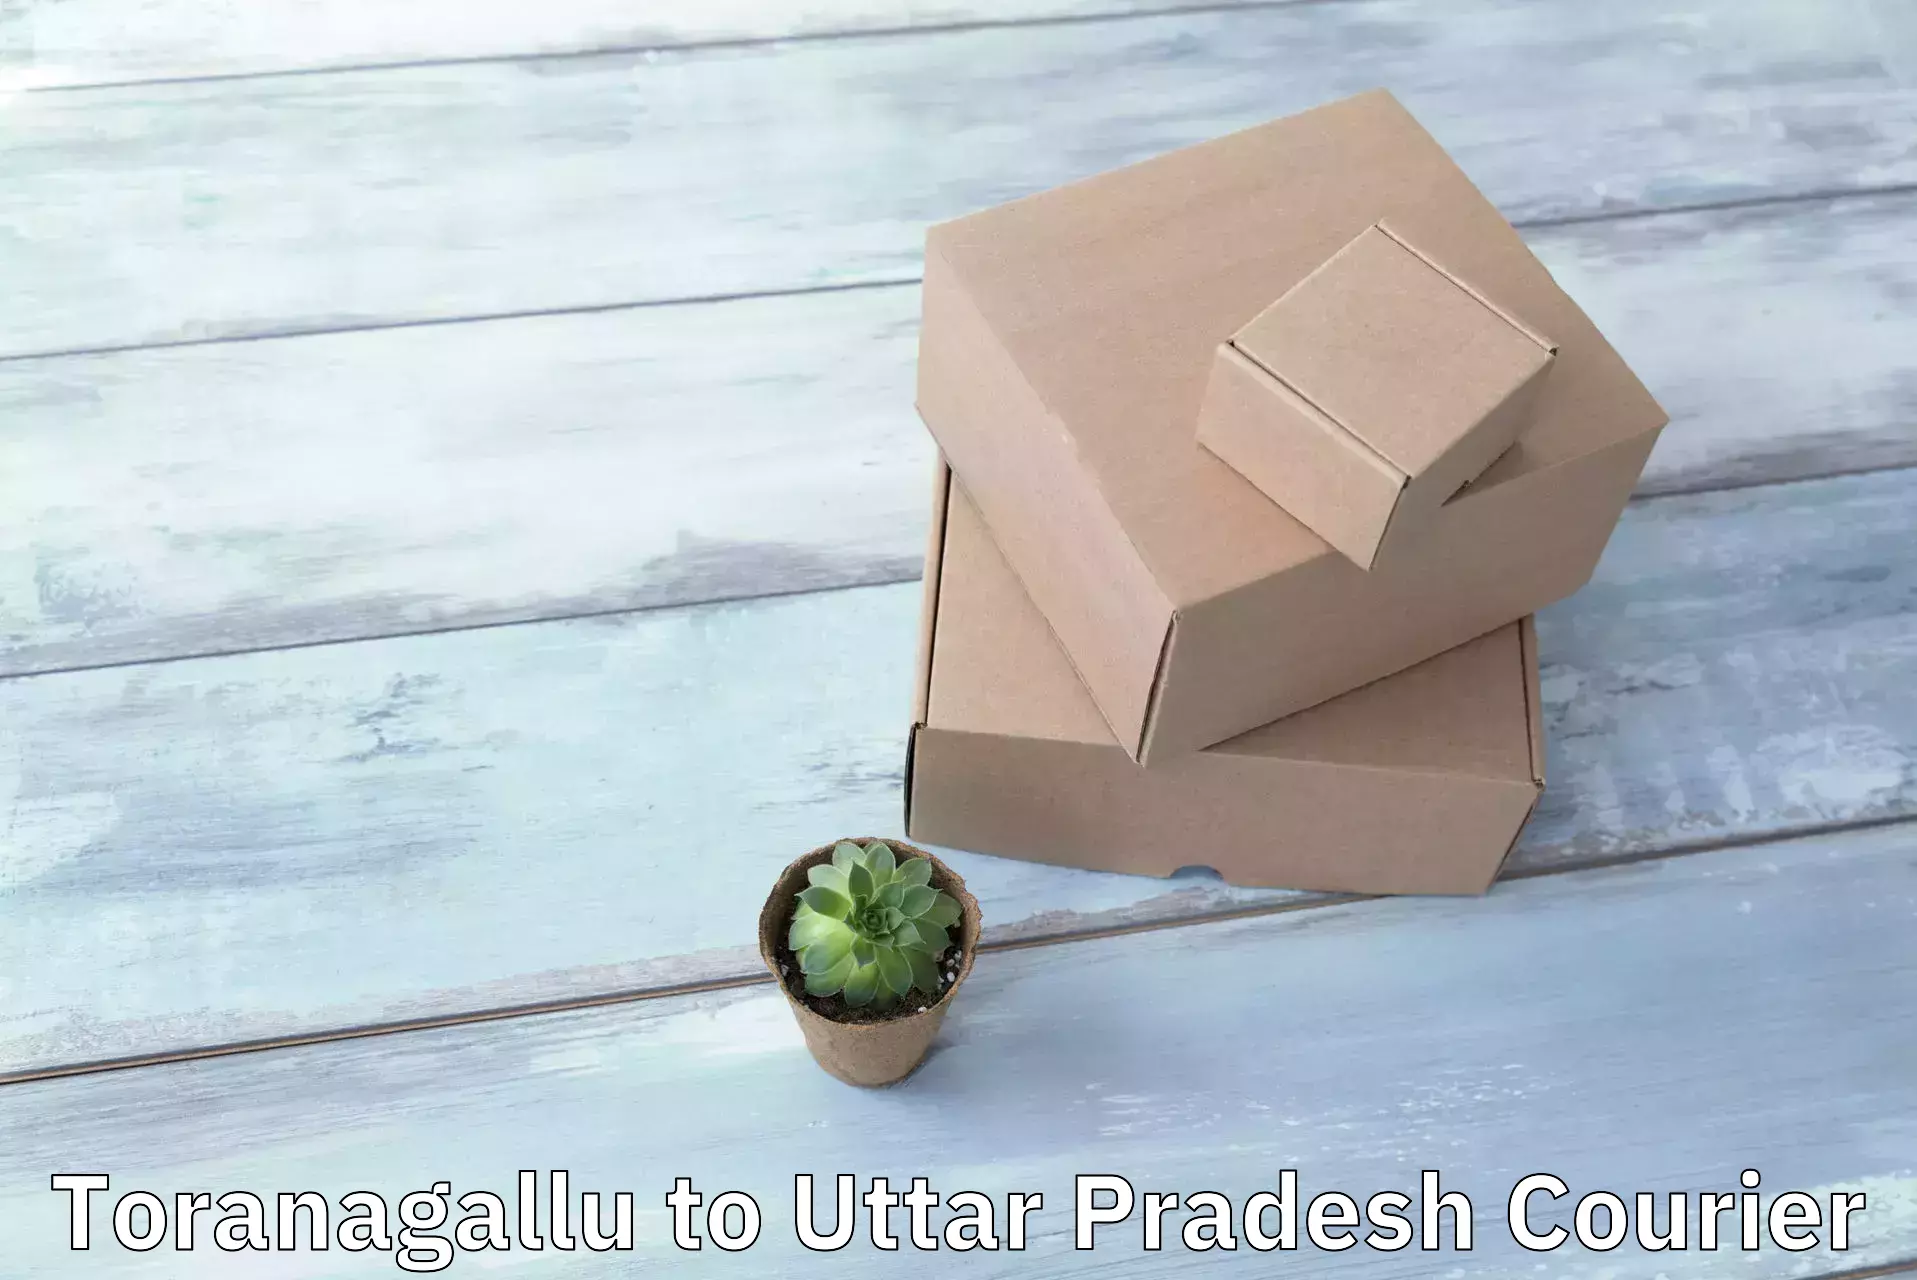 Innovative logistics solutions Toranagallu to Uttar Pradesh